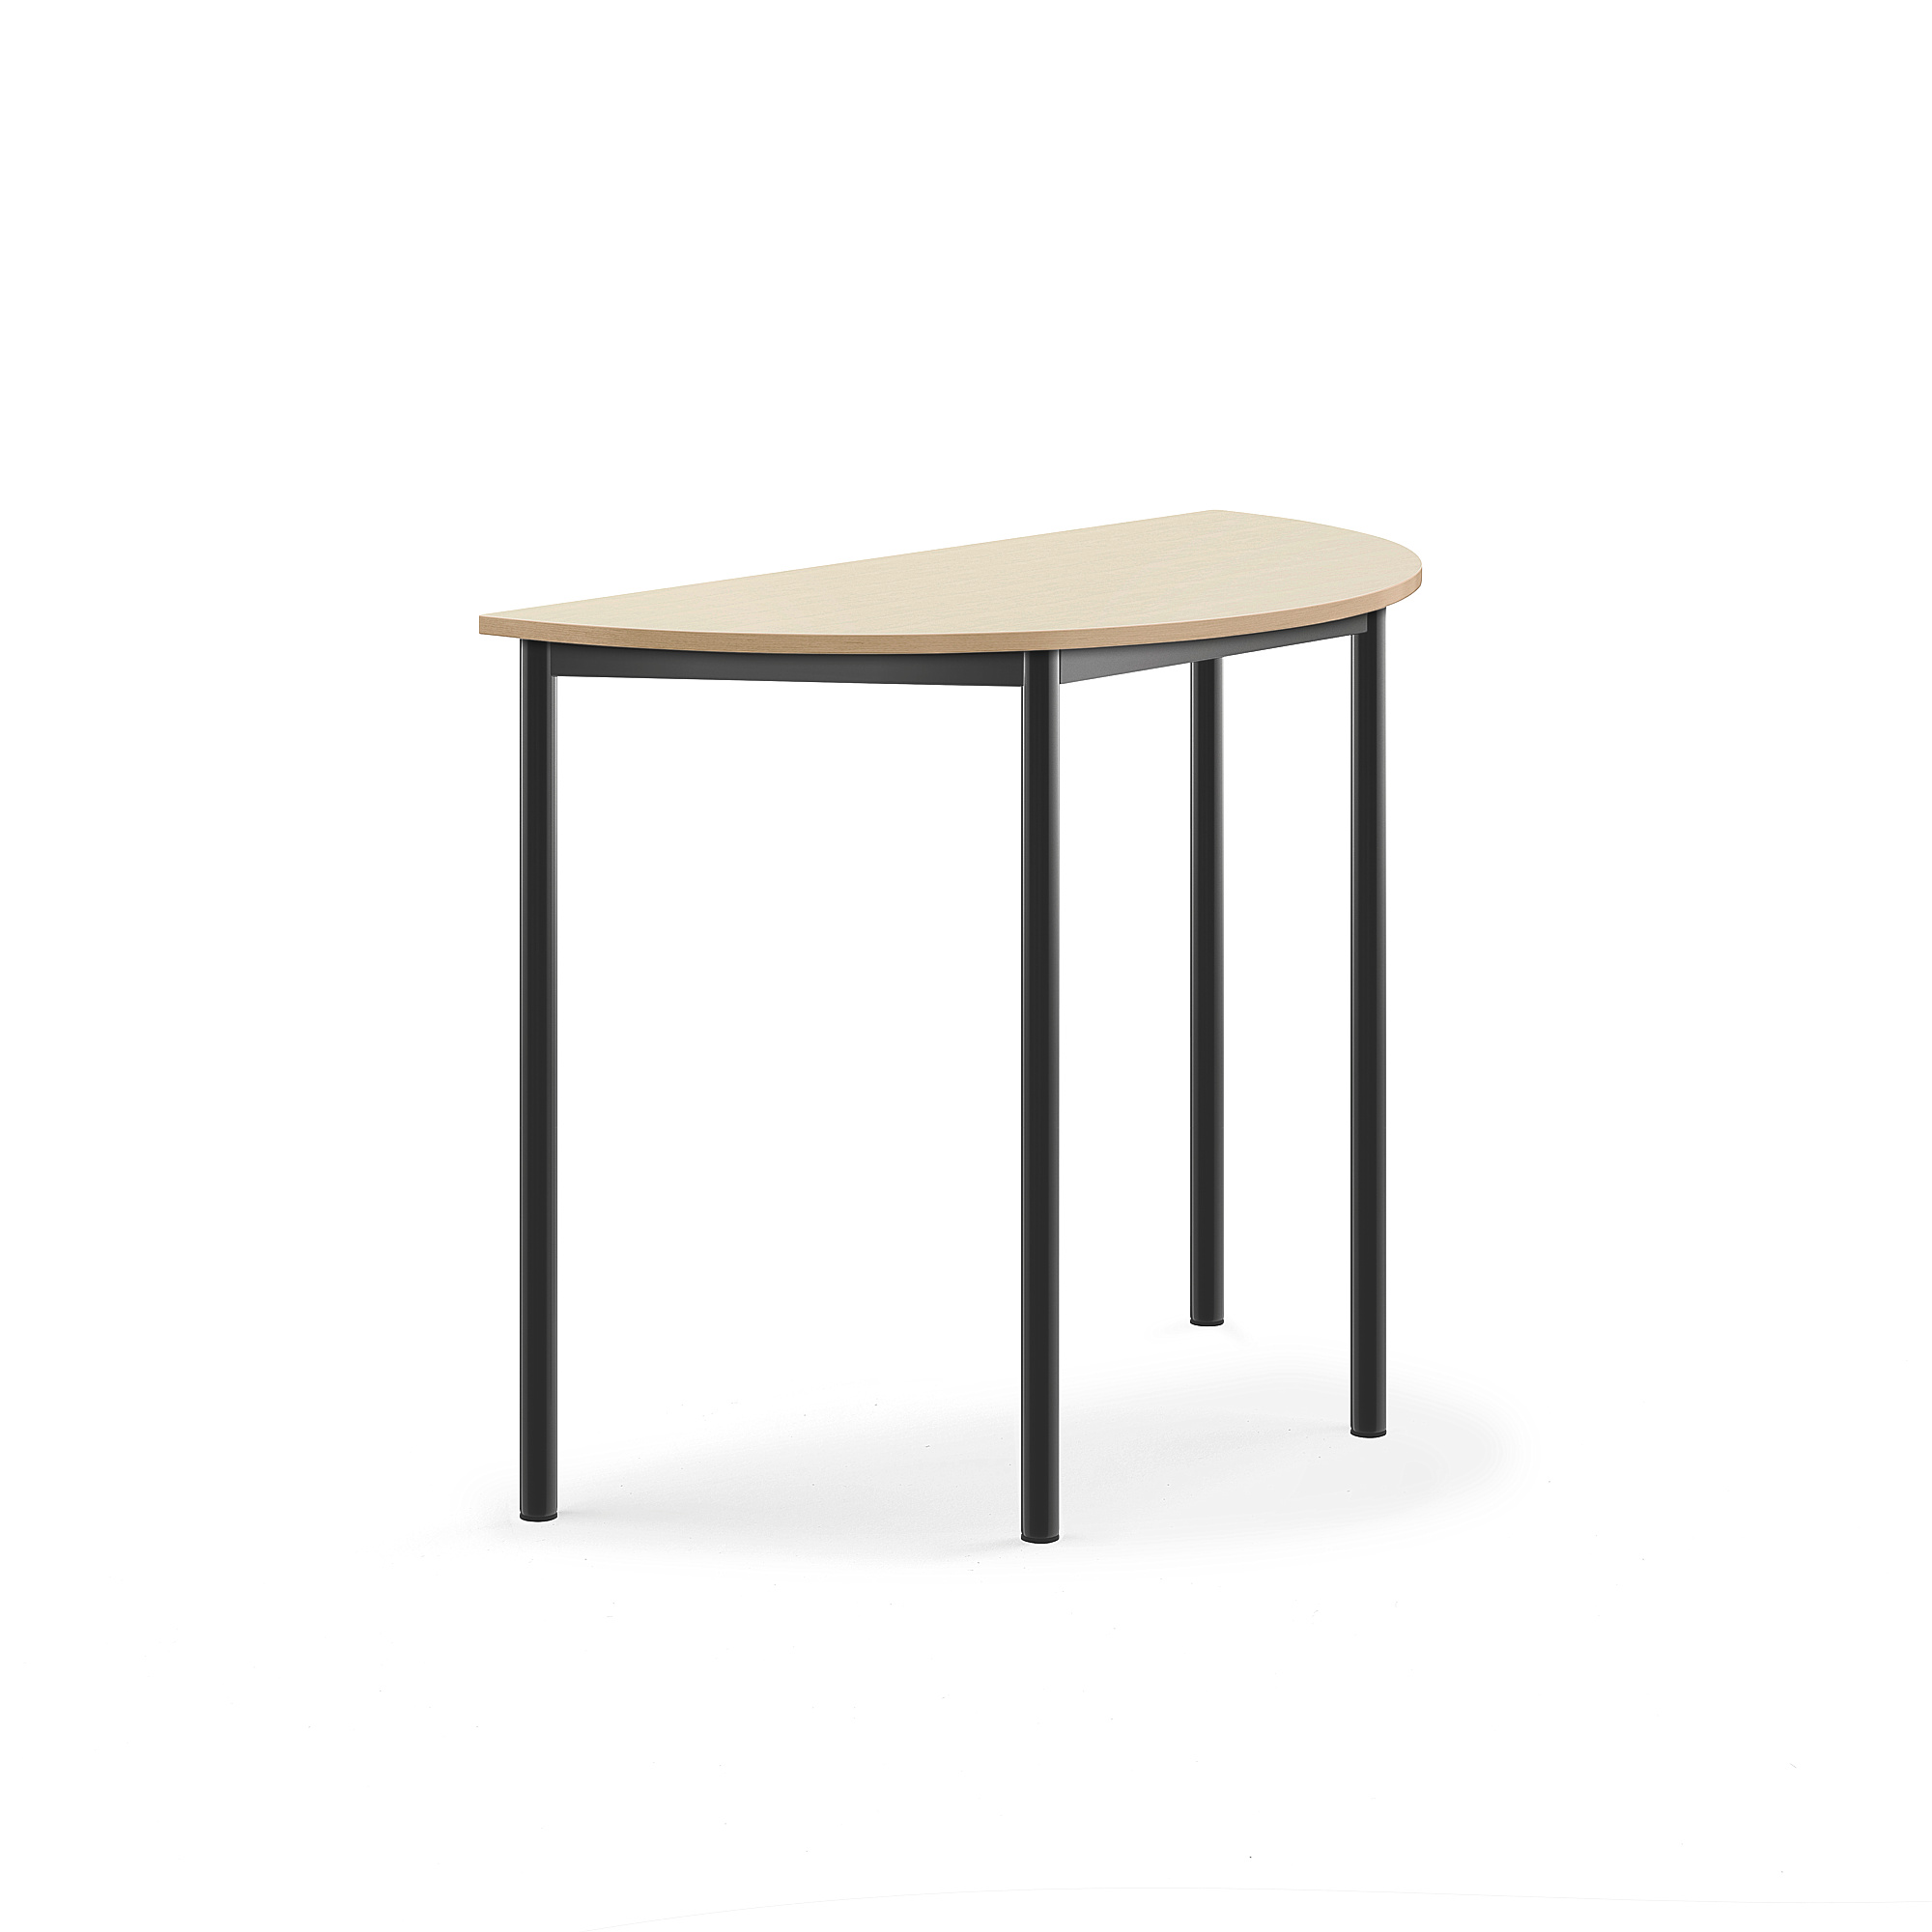 Stůl BORÅS, půlkruh, 1200x600x900 mm, antracitově šedé nohy, HPL deska, bříza